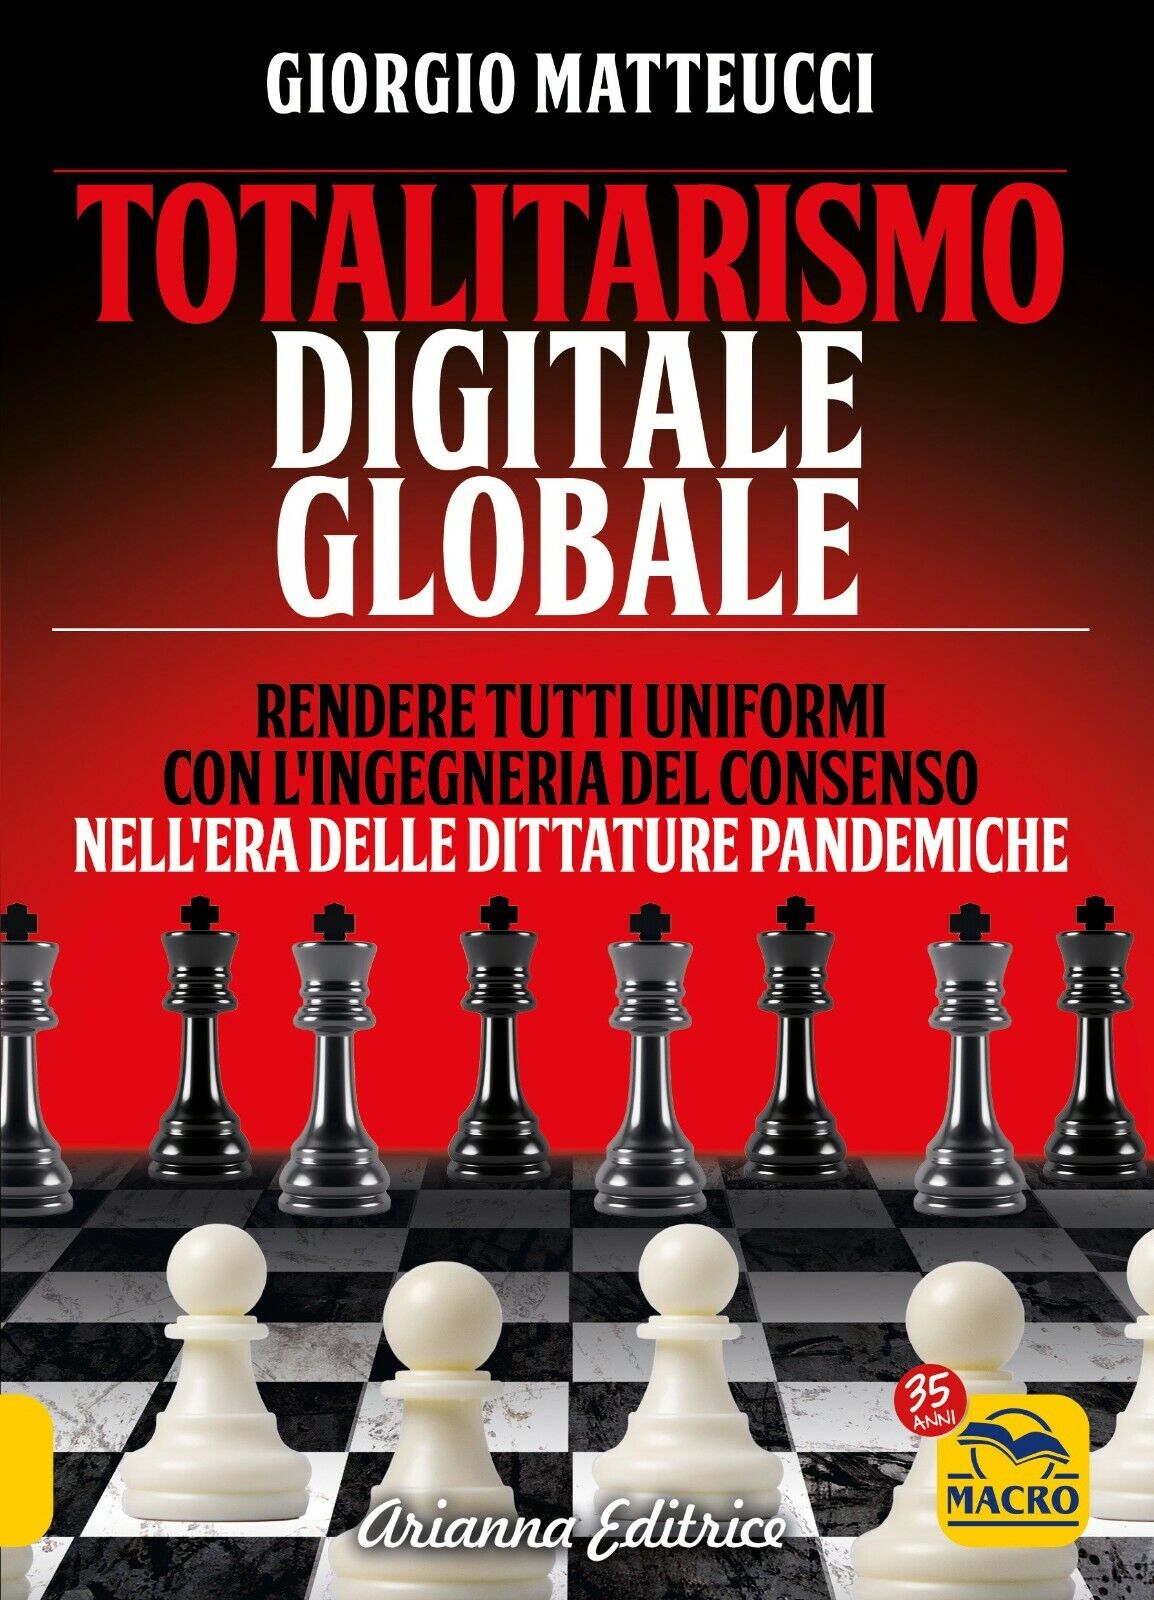 Totalitarismo digitale globale. Sincronizzazione e ingegneria del consenso nelL'